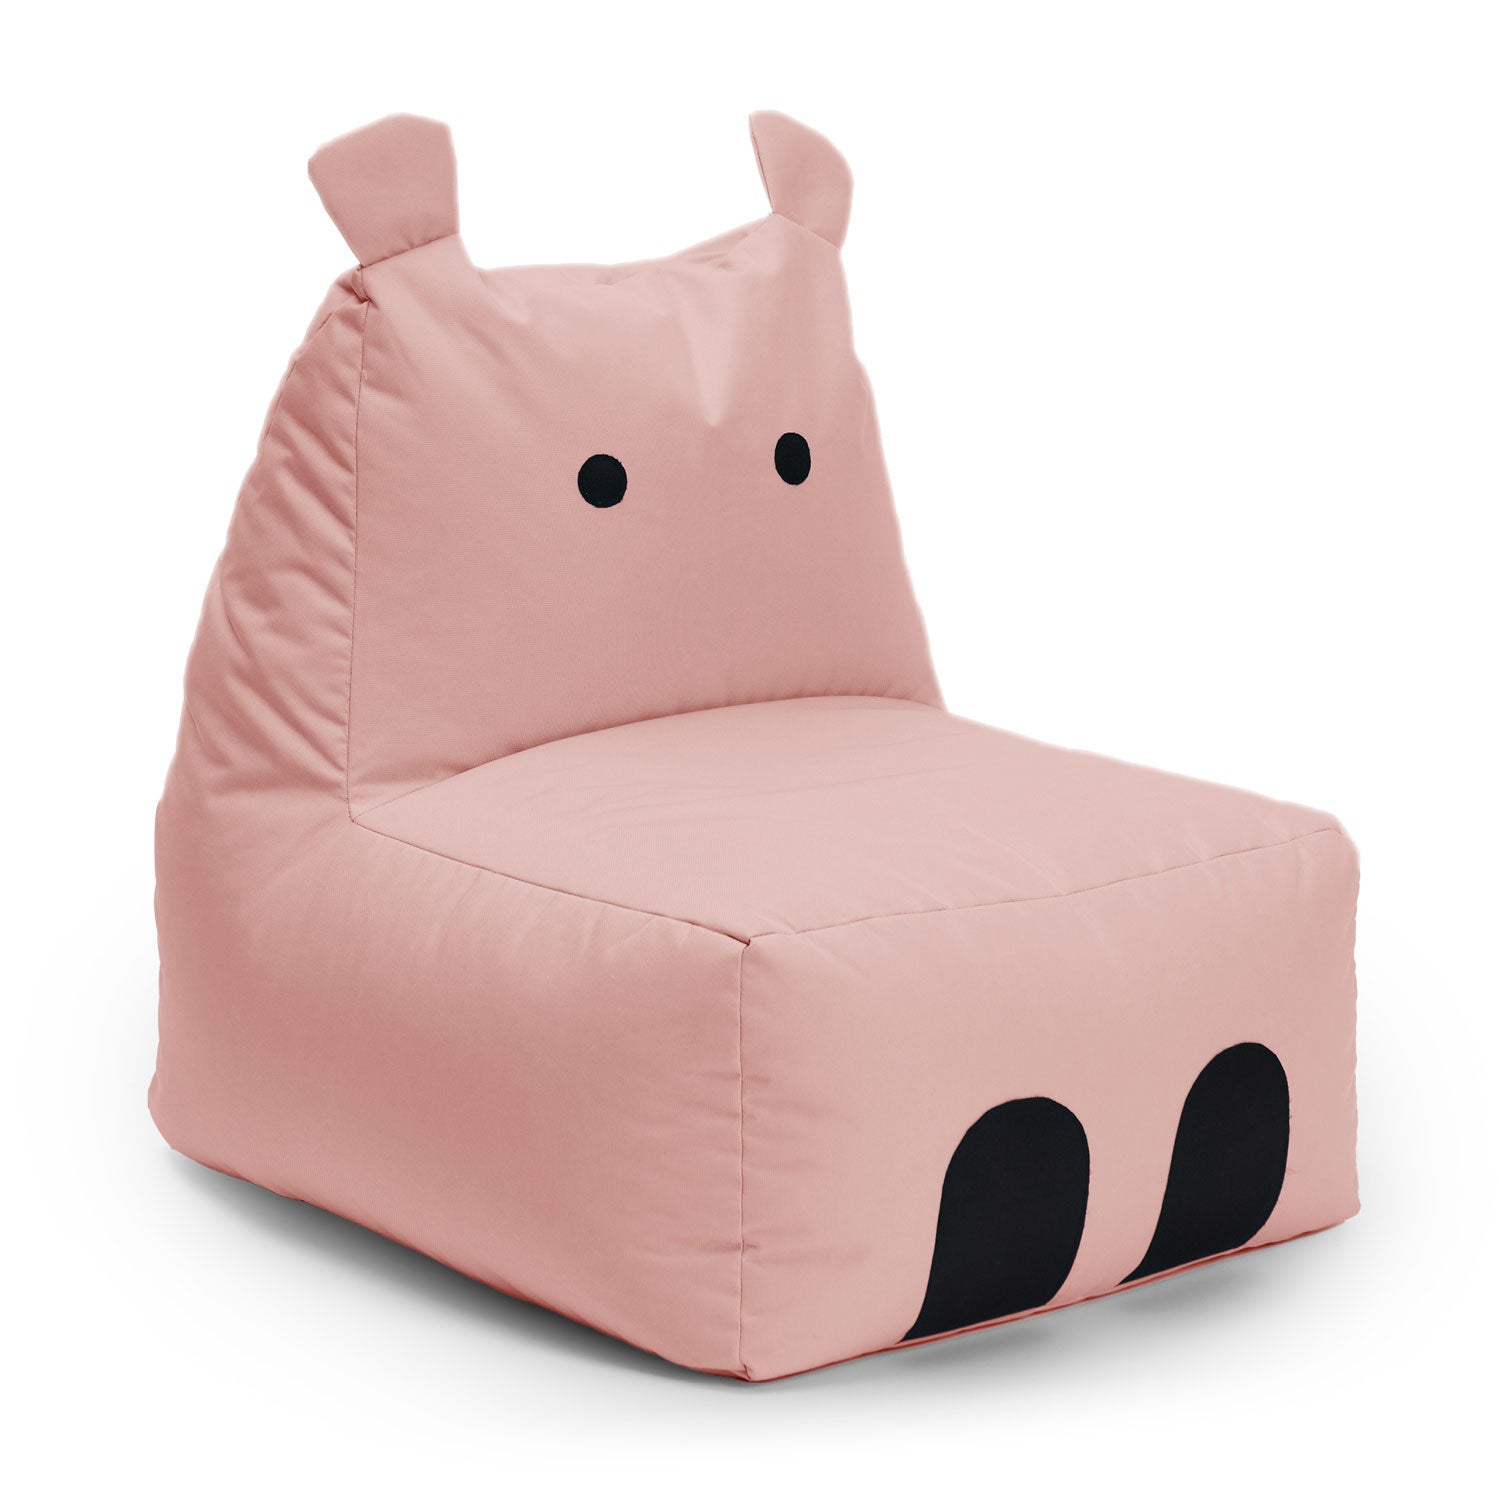 LUMALAND Animal Line Kindersitzsack Hippo - Pastell Pink